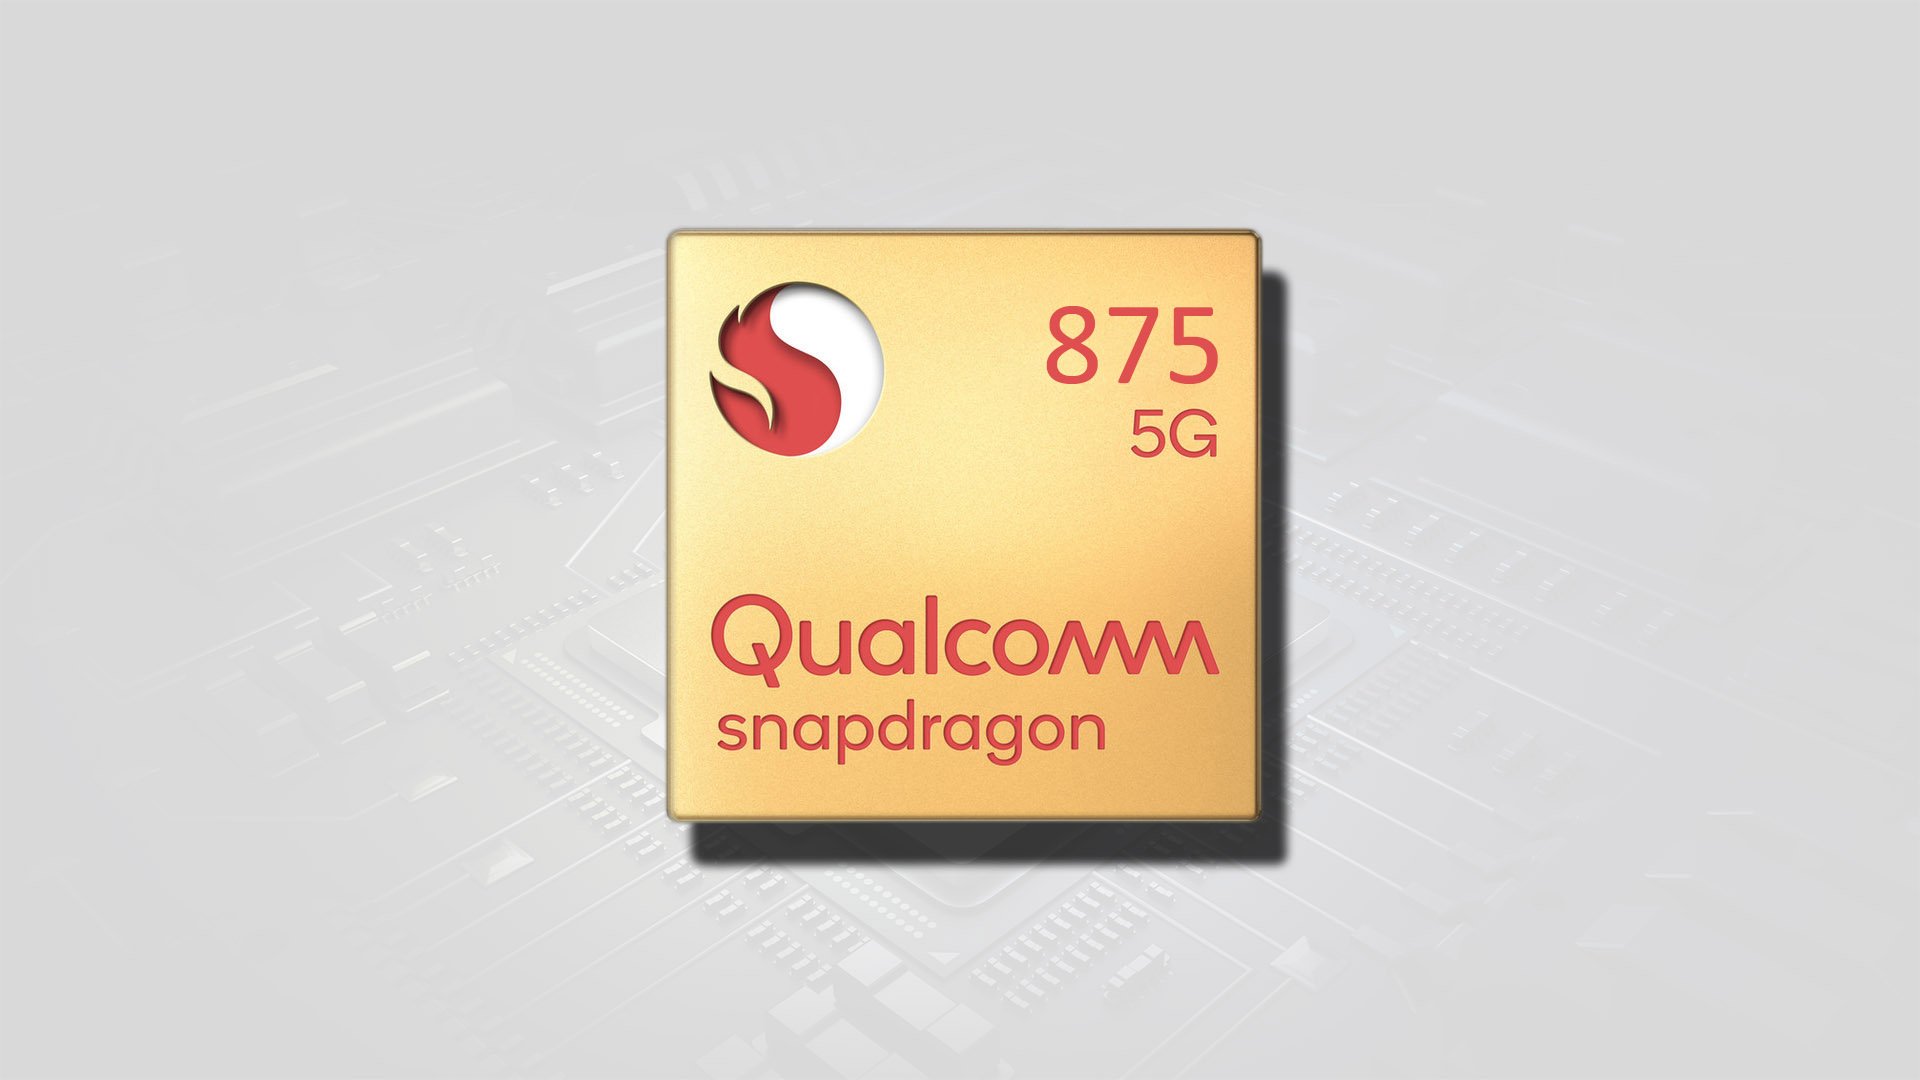 Huhu: Qualcomm esittelee Snapdragon 875 SoC: n omalla pelipuhelimellaan